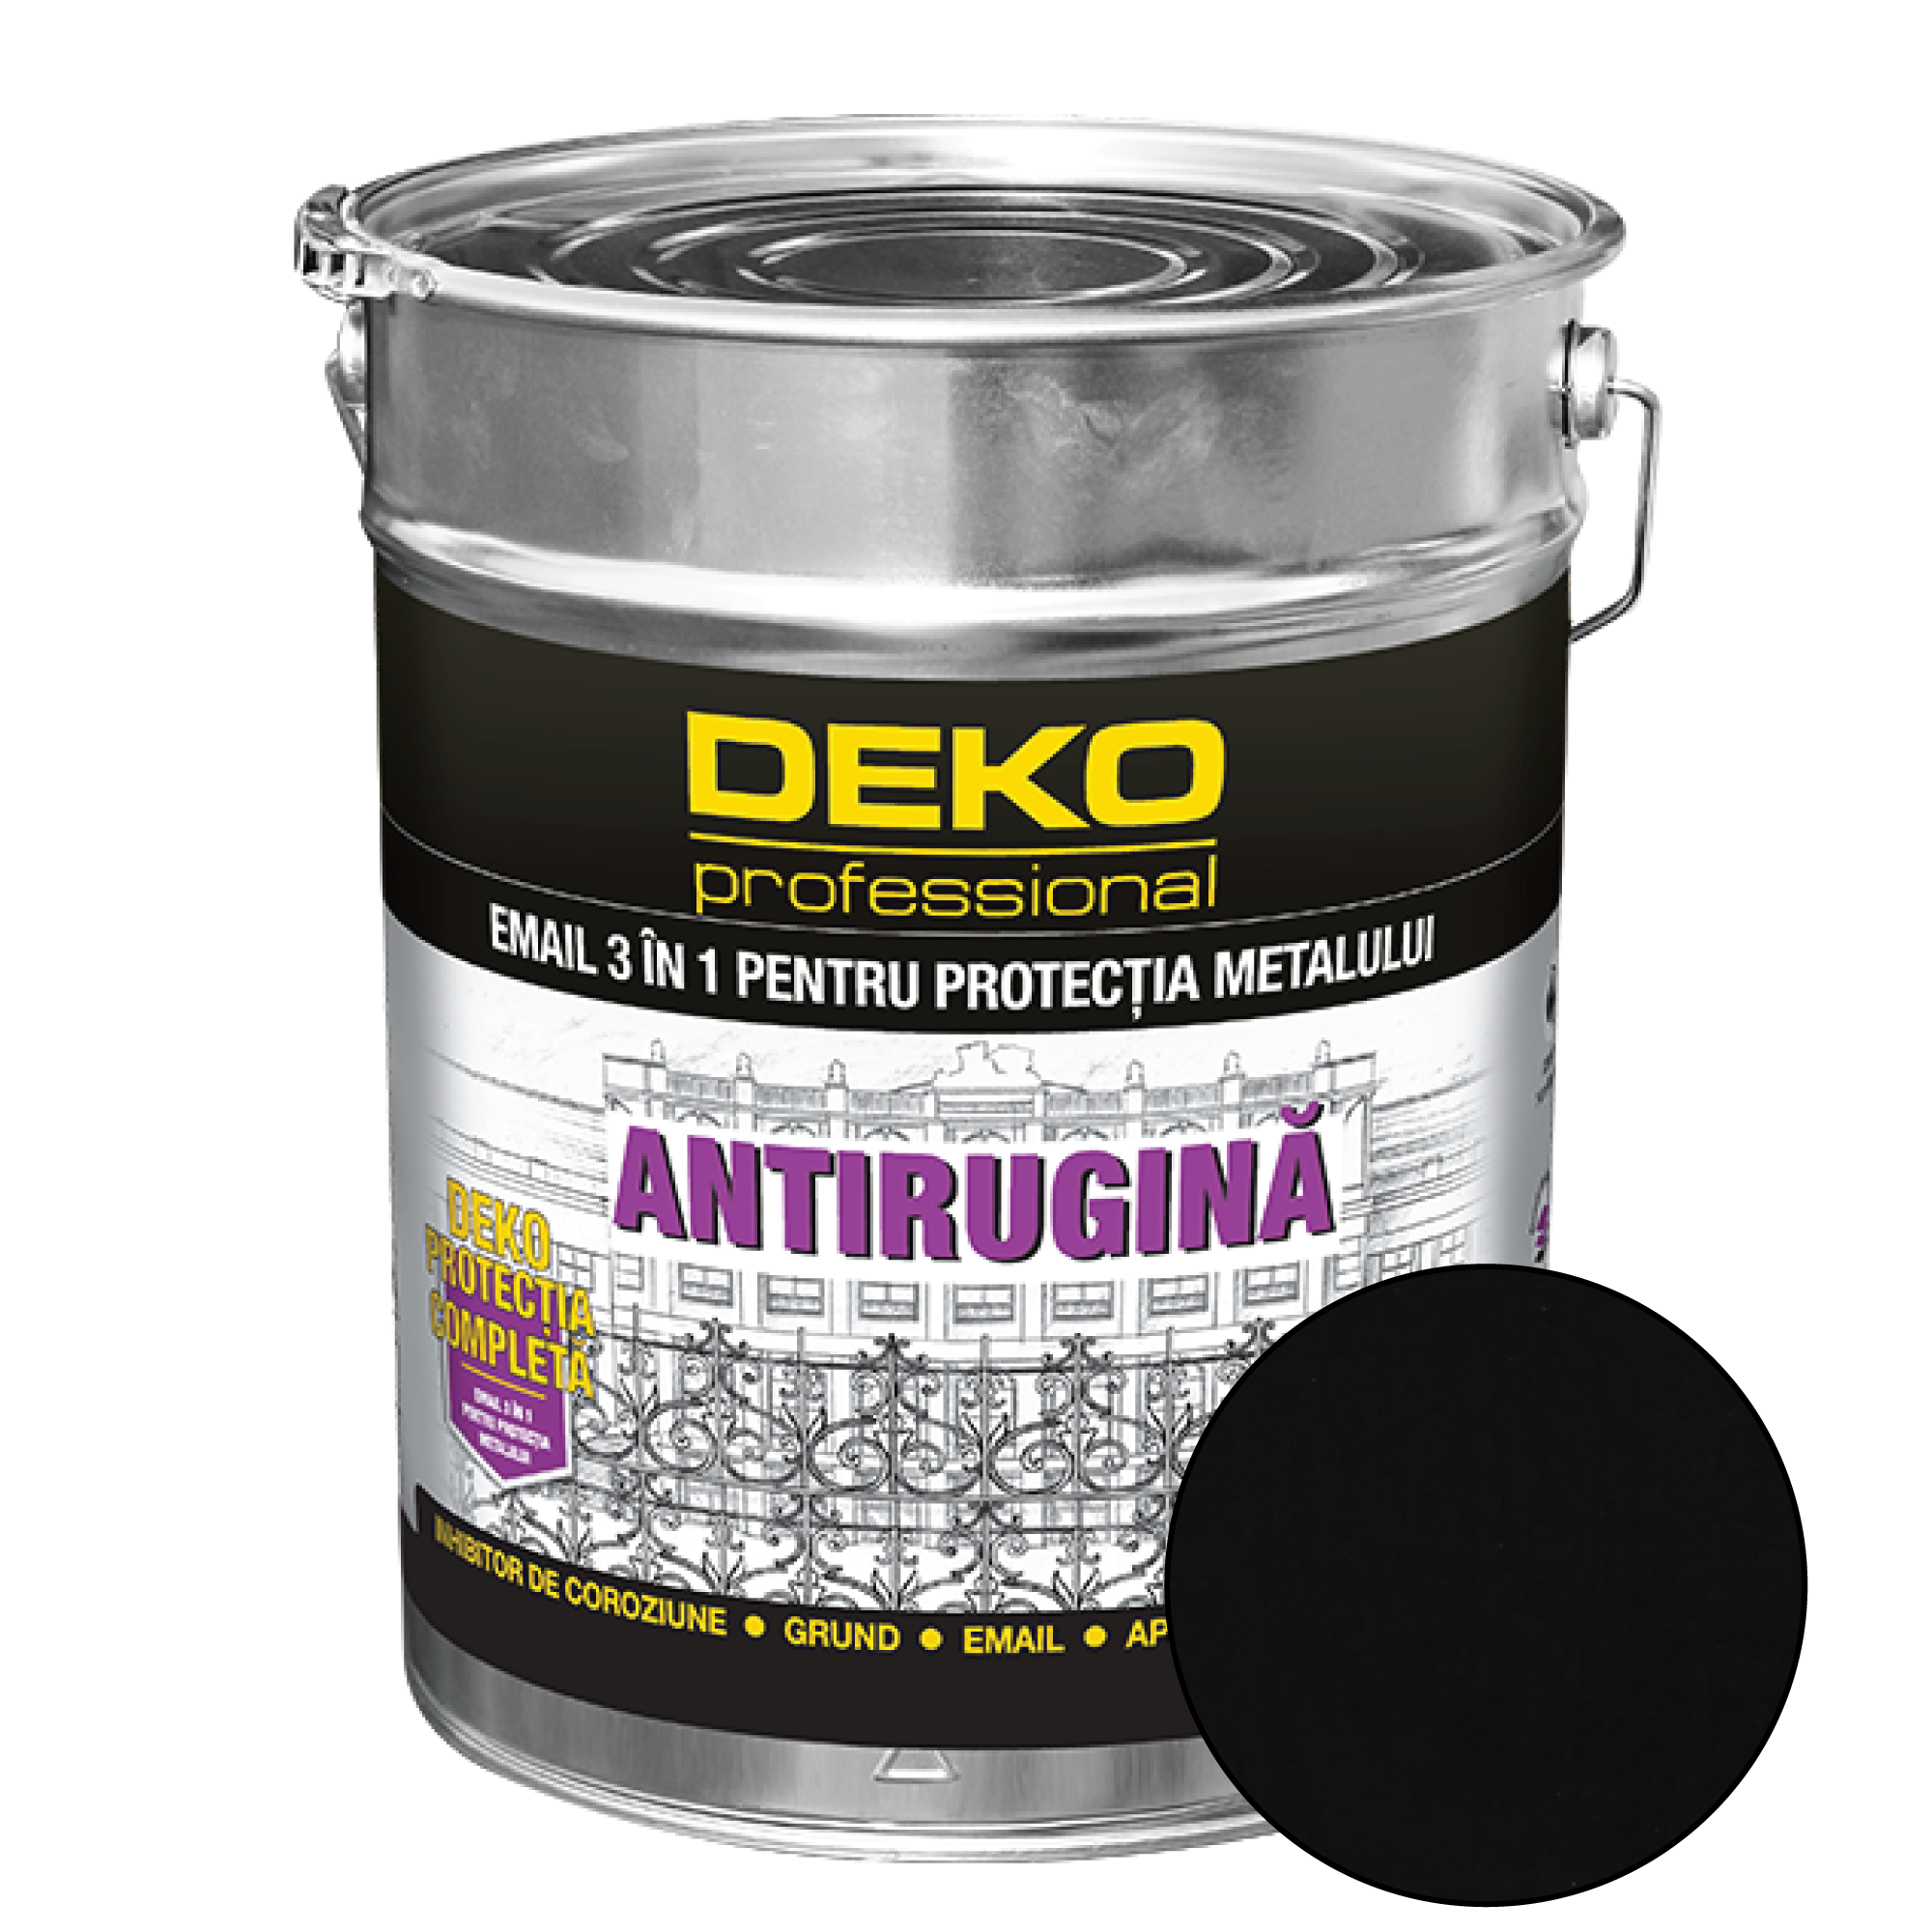 Deko Protectie Completa 3 in 1 Email, negru, interior/exterior, 20 kg acoperis